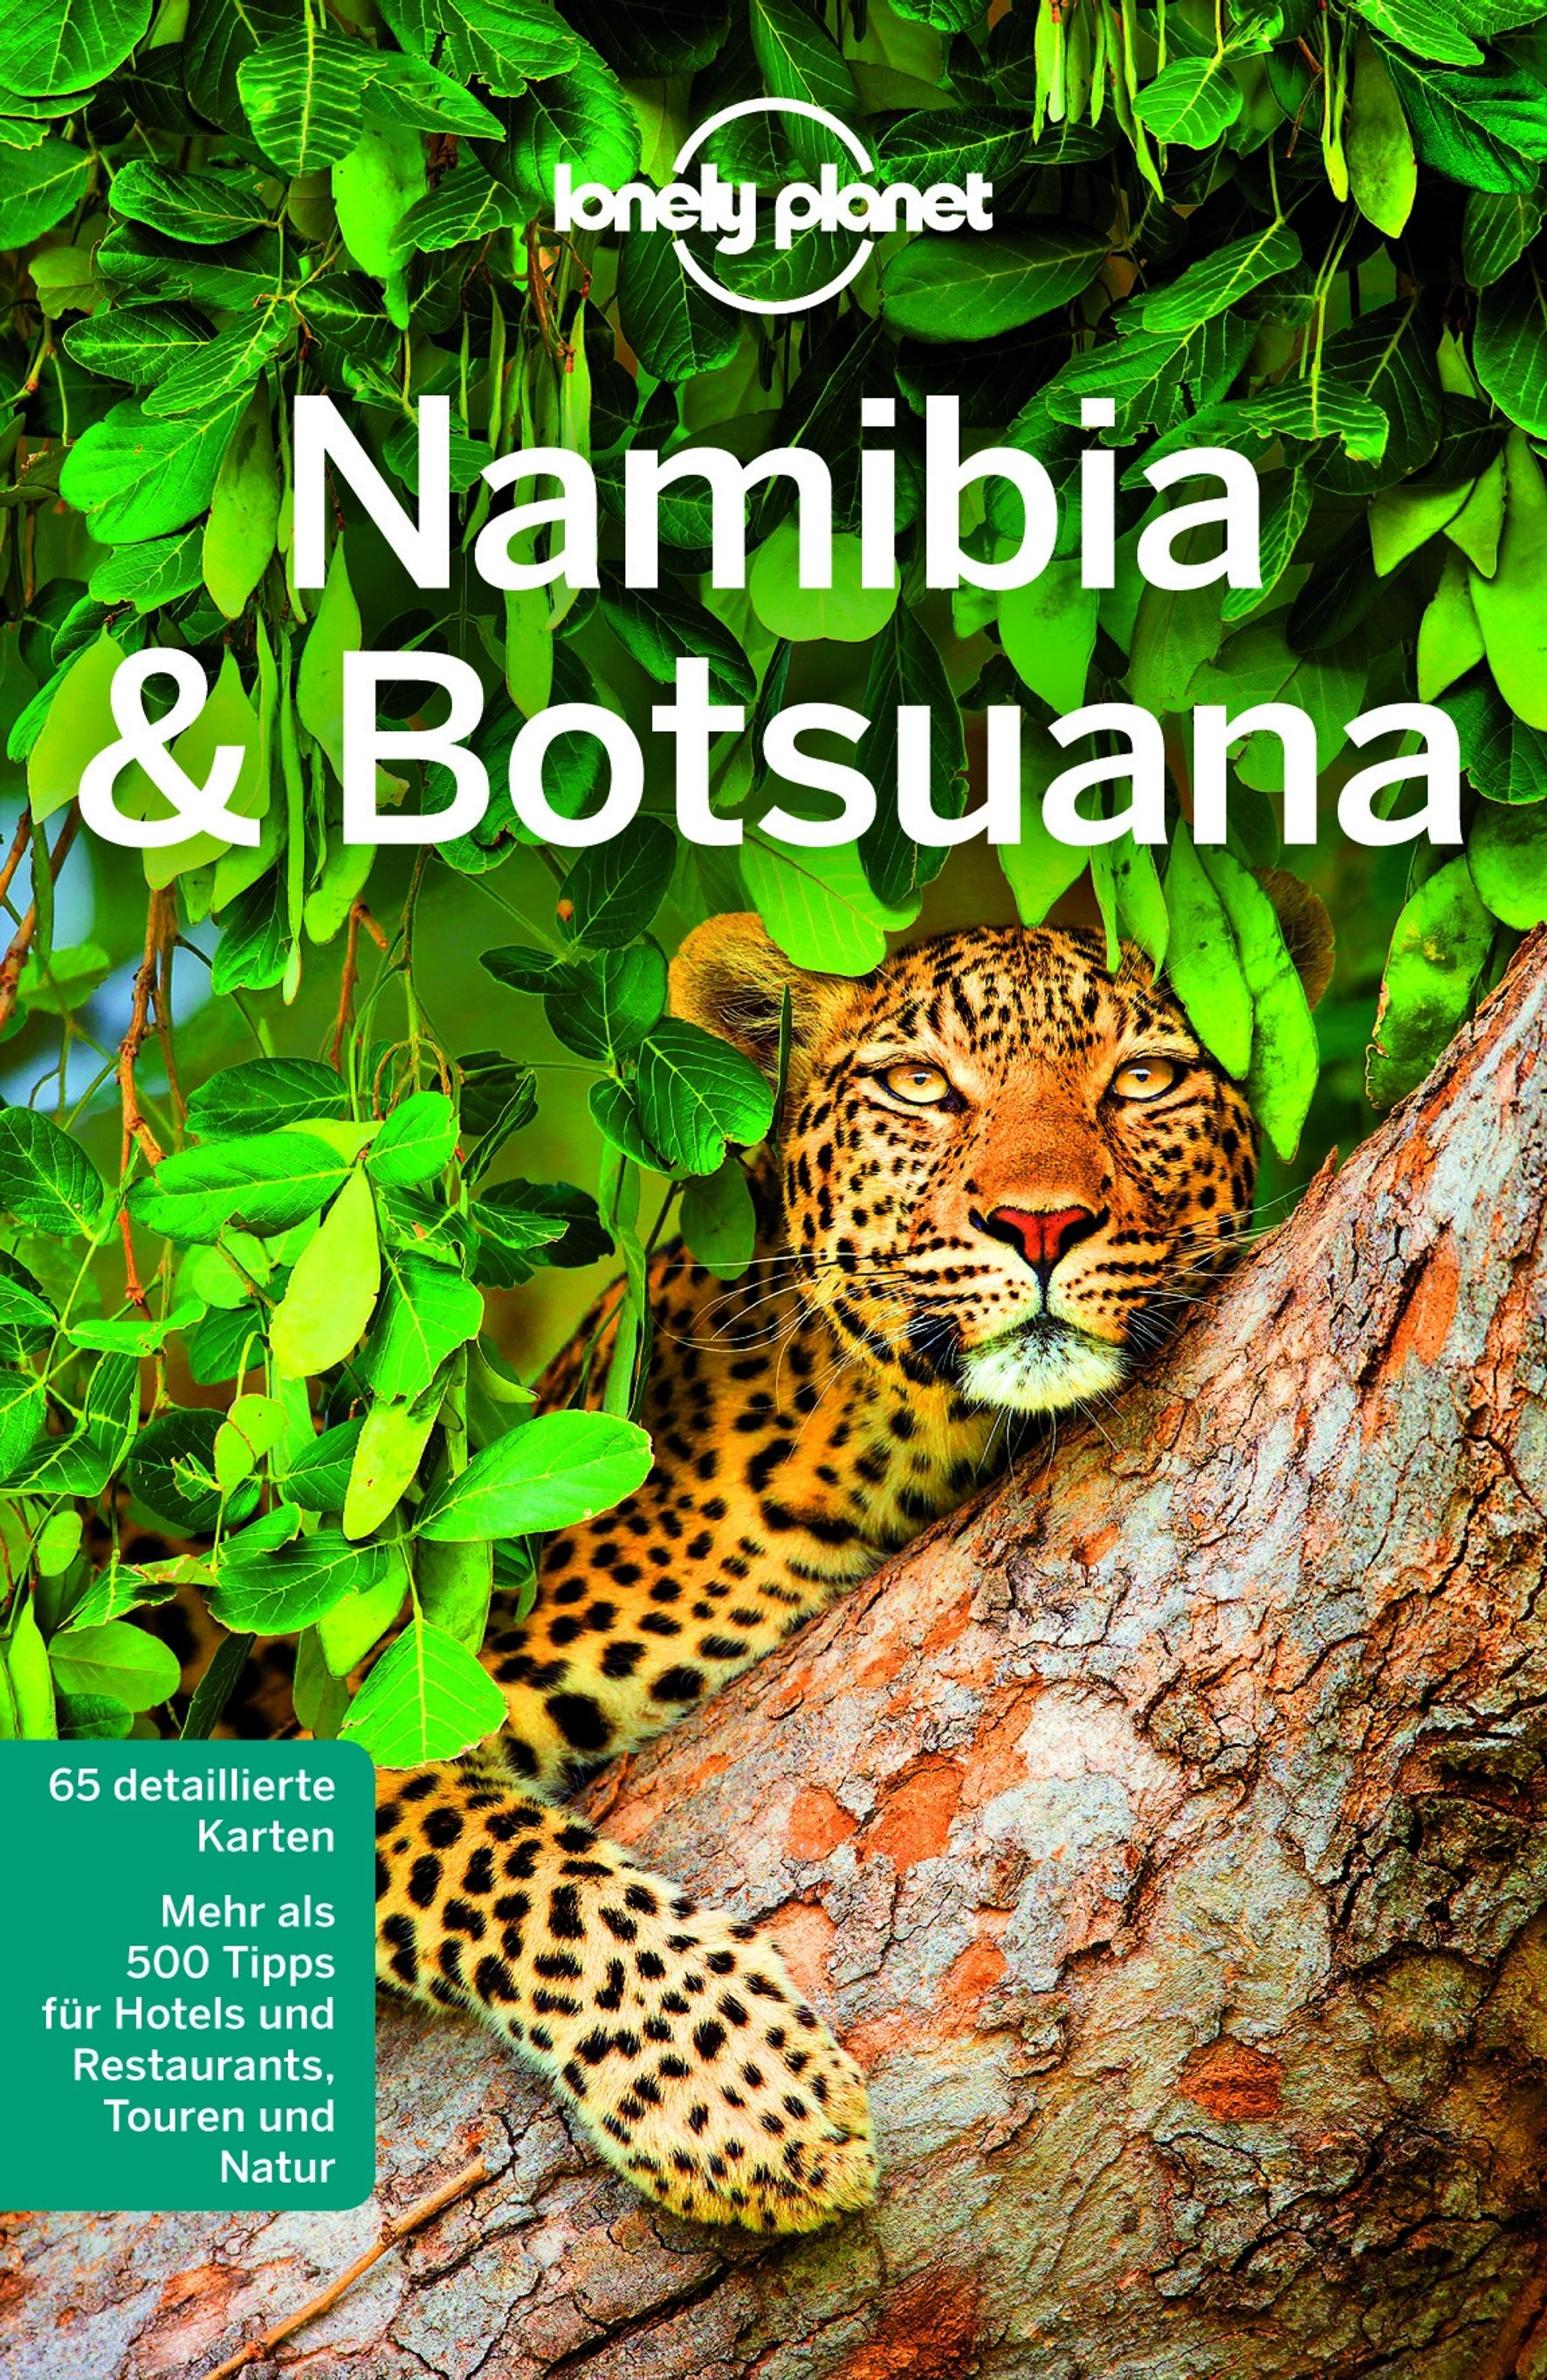 Lonely Planet Namibia, Botsuana (eBook)